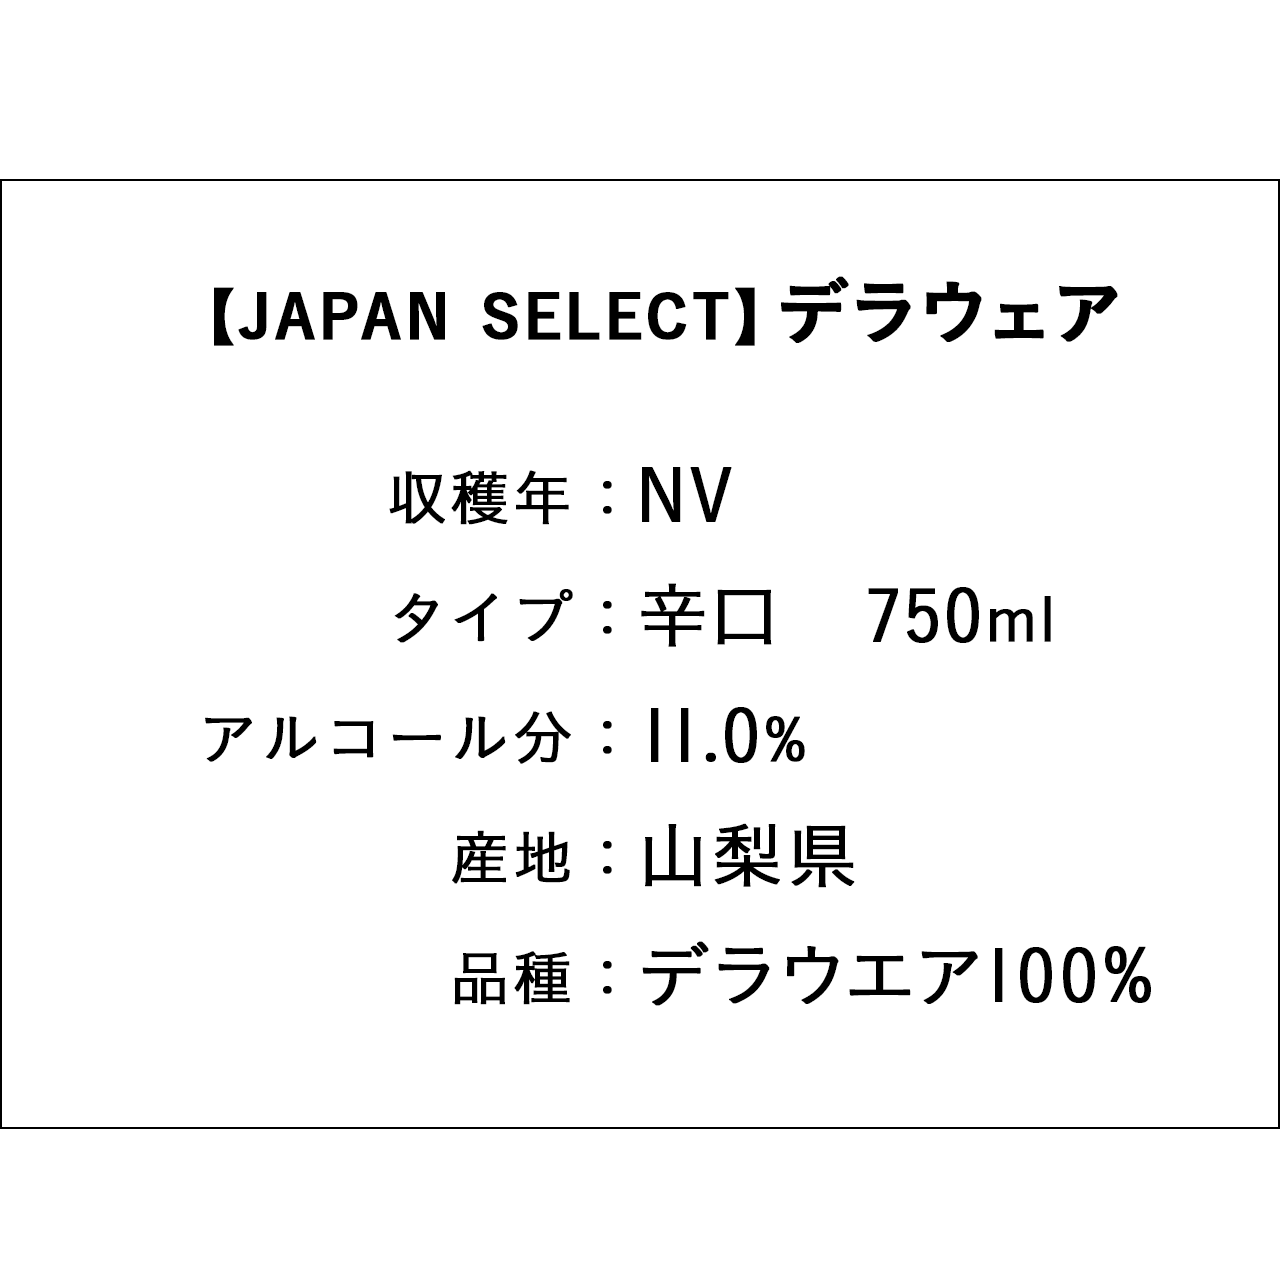 【JAPAN SELECT】デラウェア